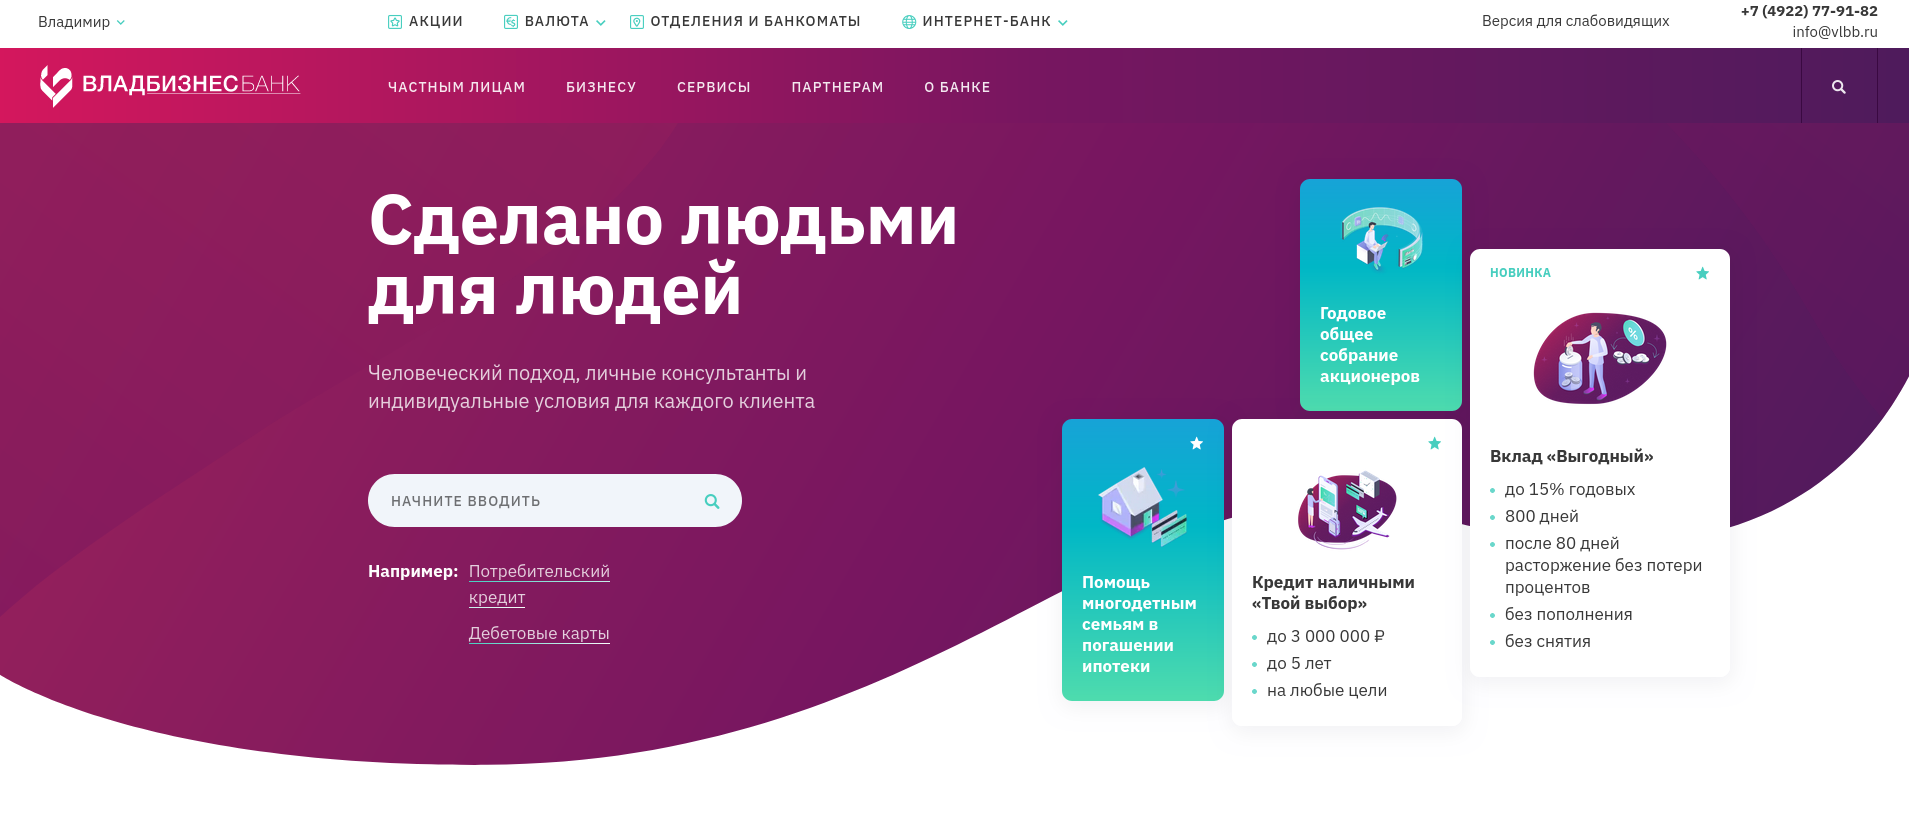 «ВЛАДБИЗНЕСБАНК» — Современный банк во Владимире